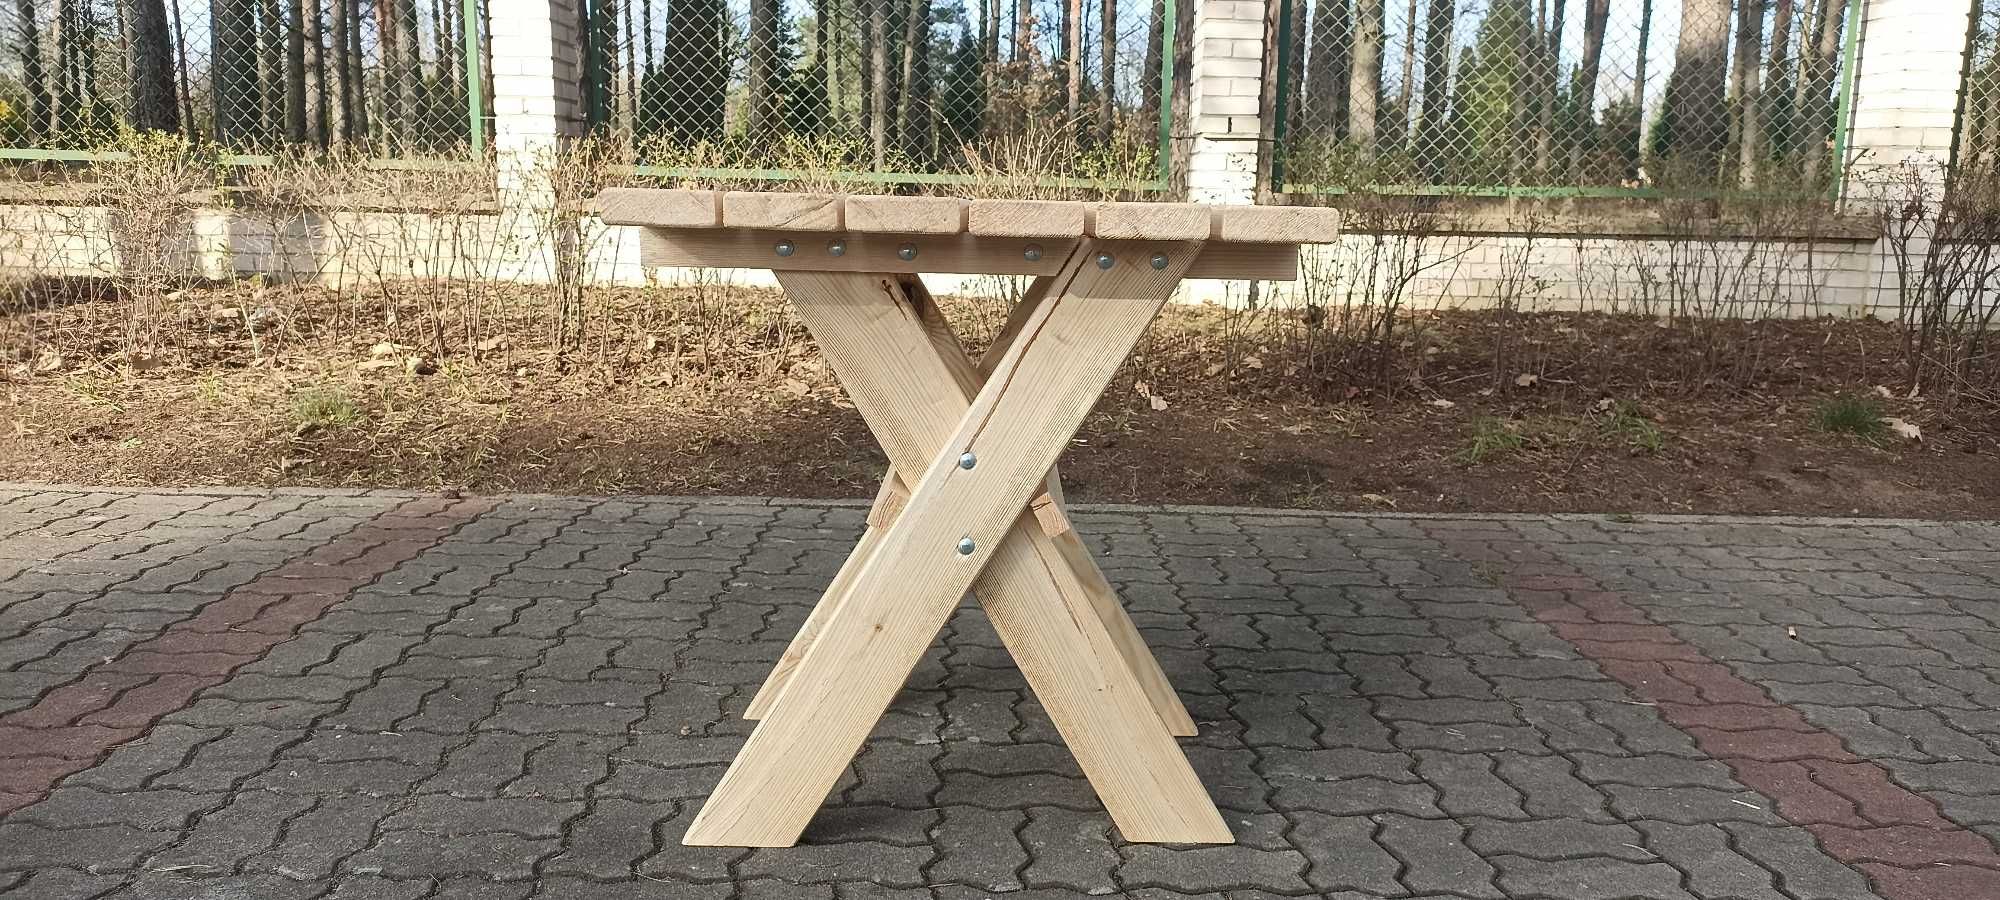 Stolik kawowy z krzesłami balkonowy ogrodowy biesiadny drewniany nowy